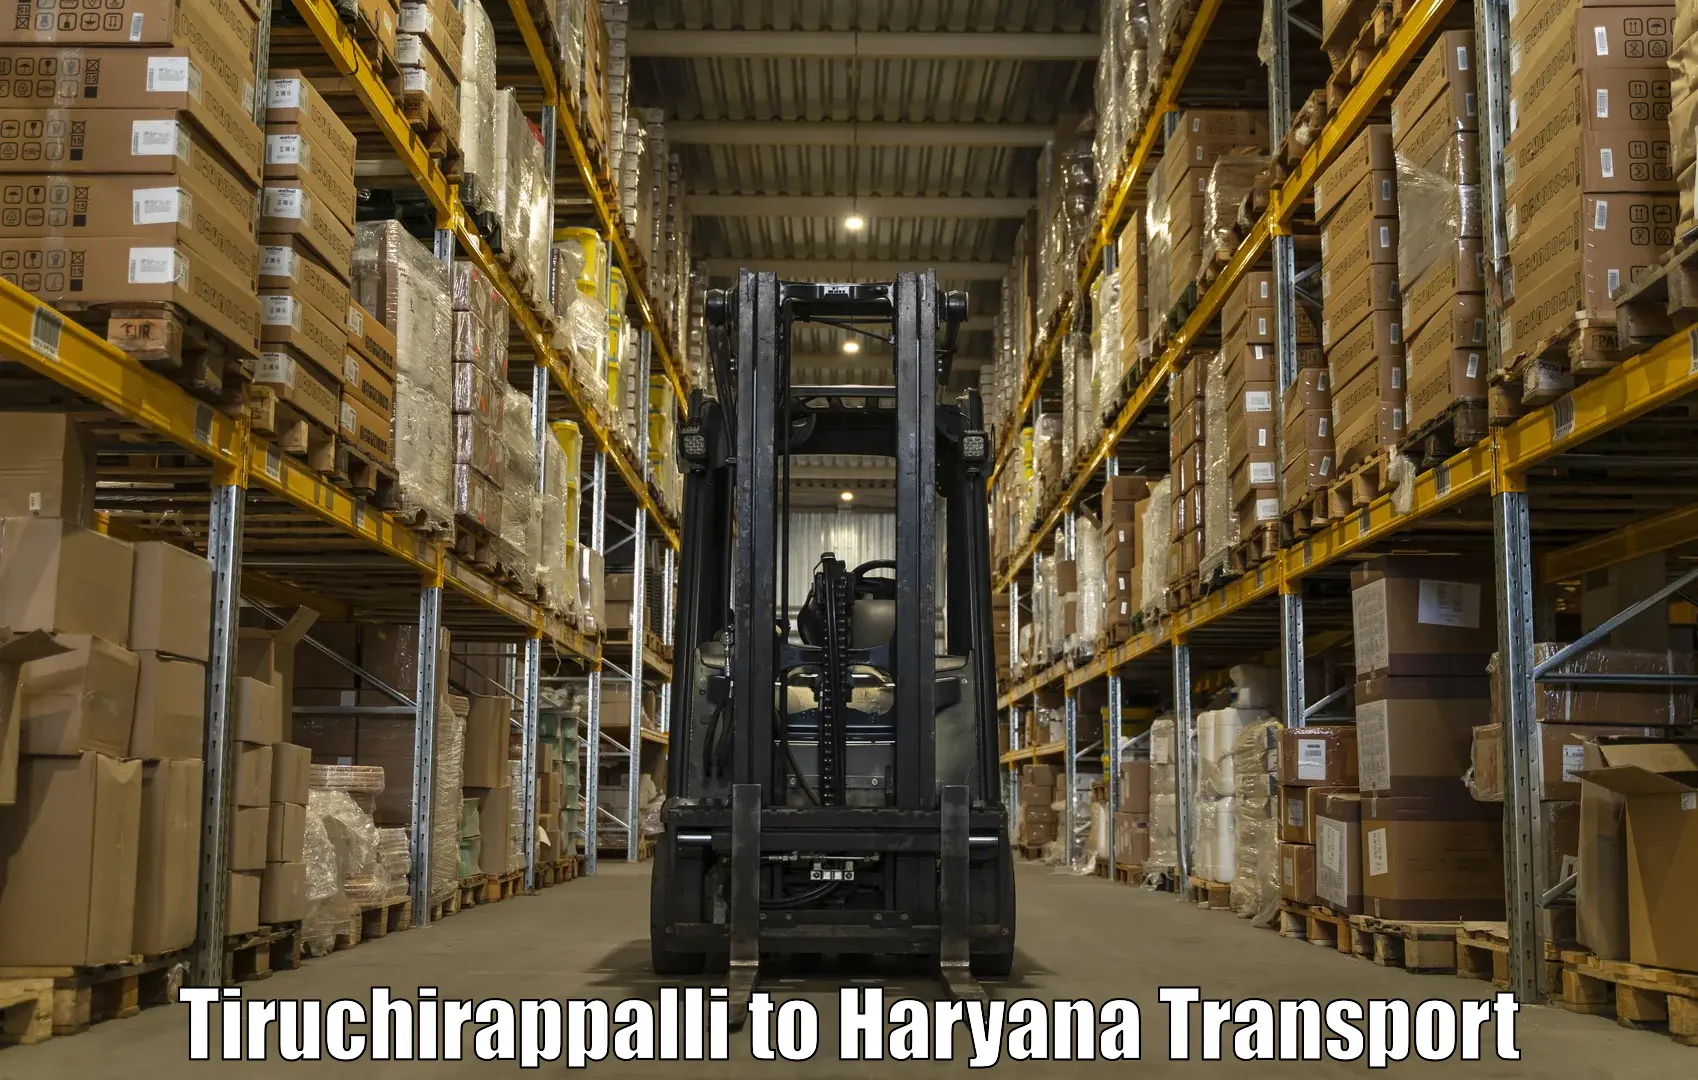 Bike transport service Tiruchirappalli to Haryana